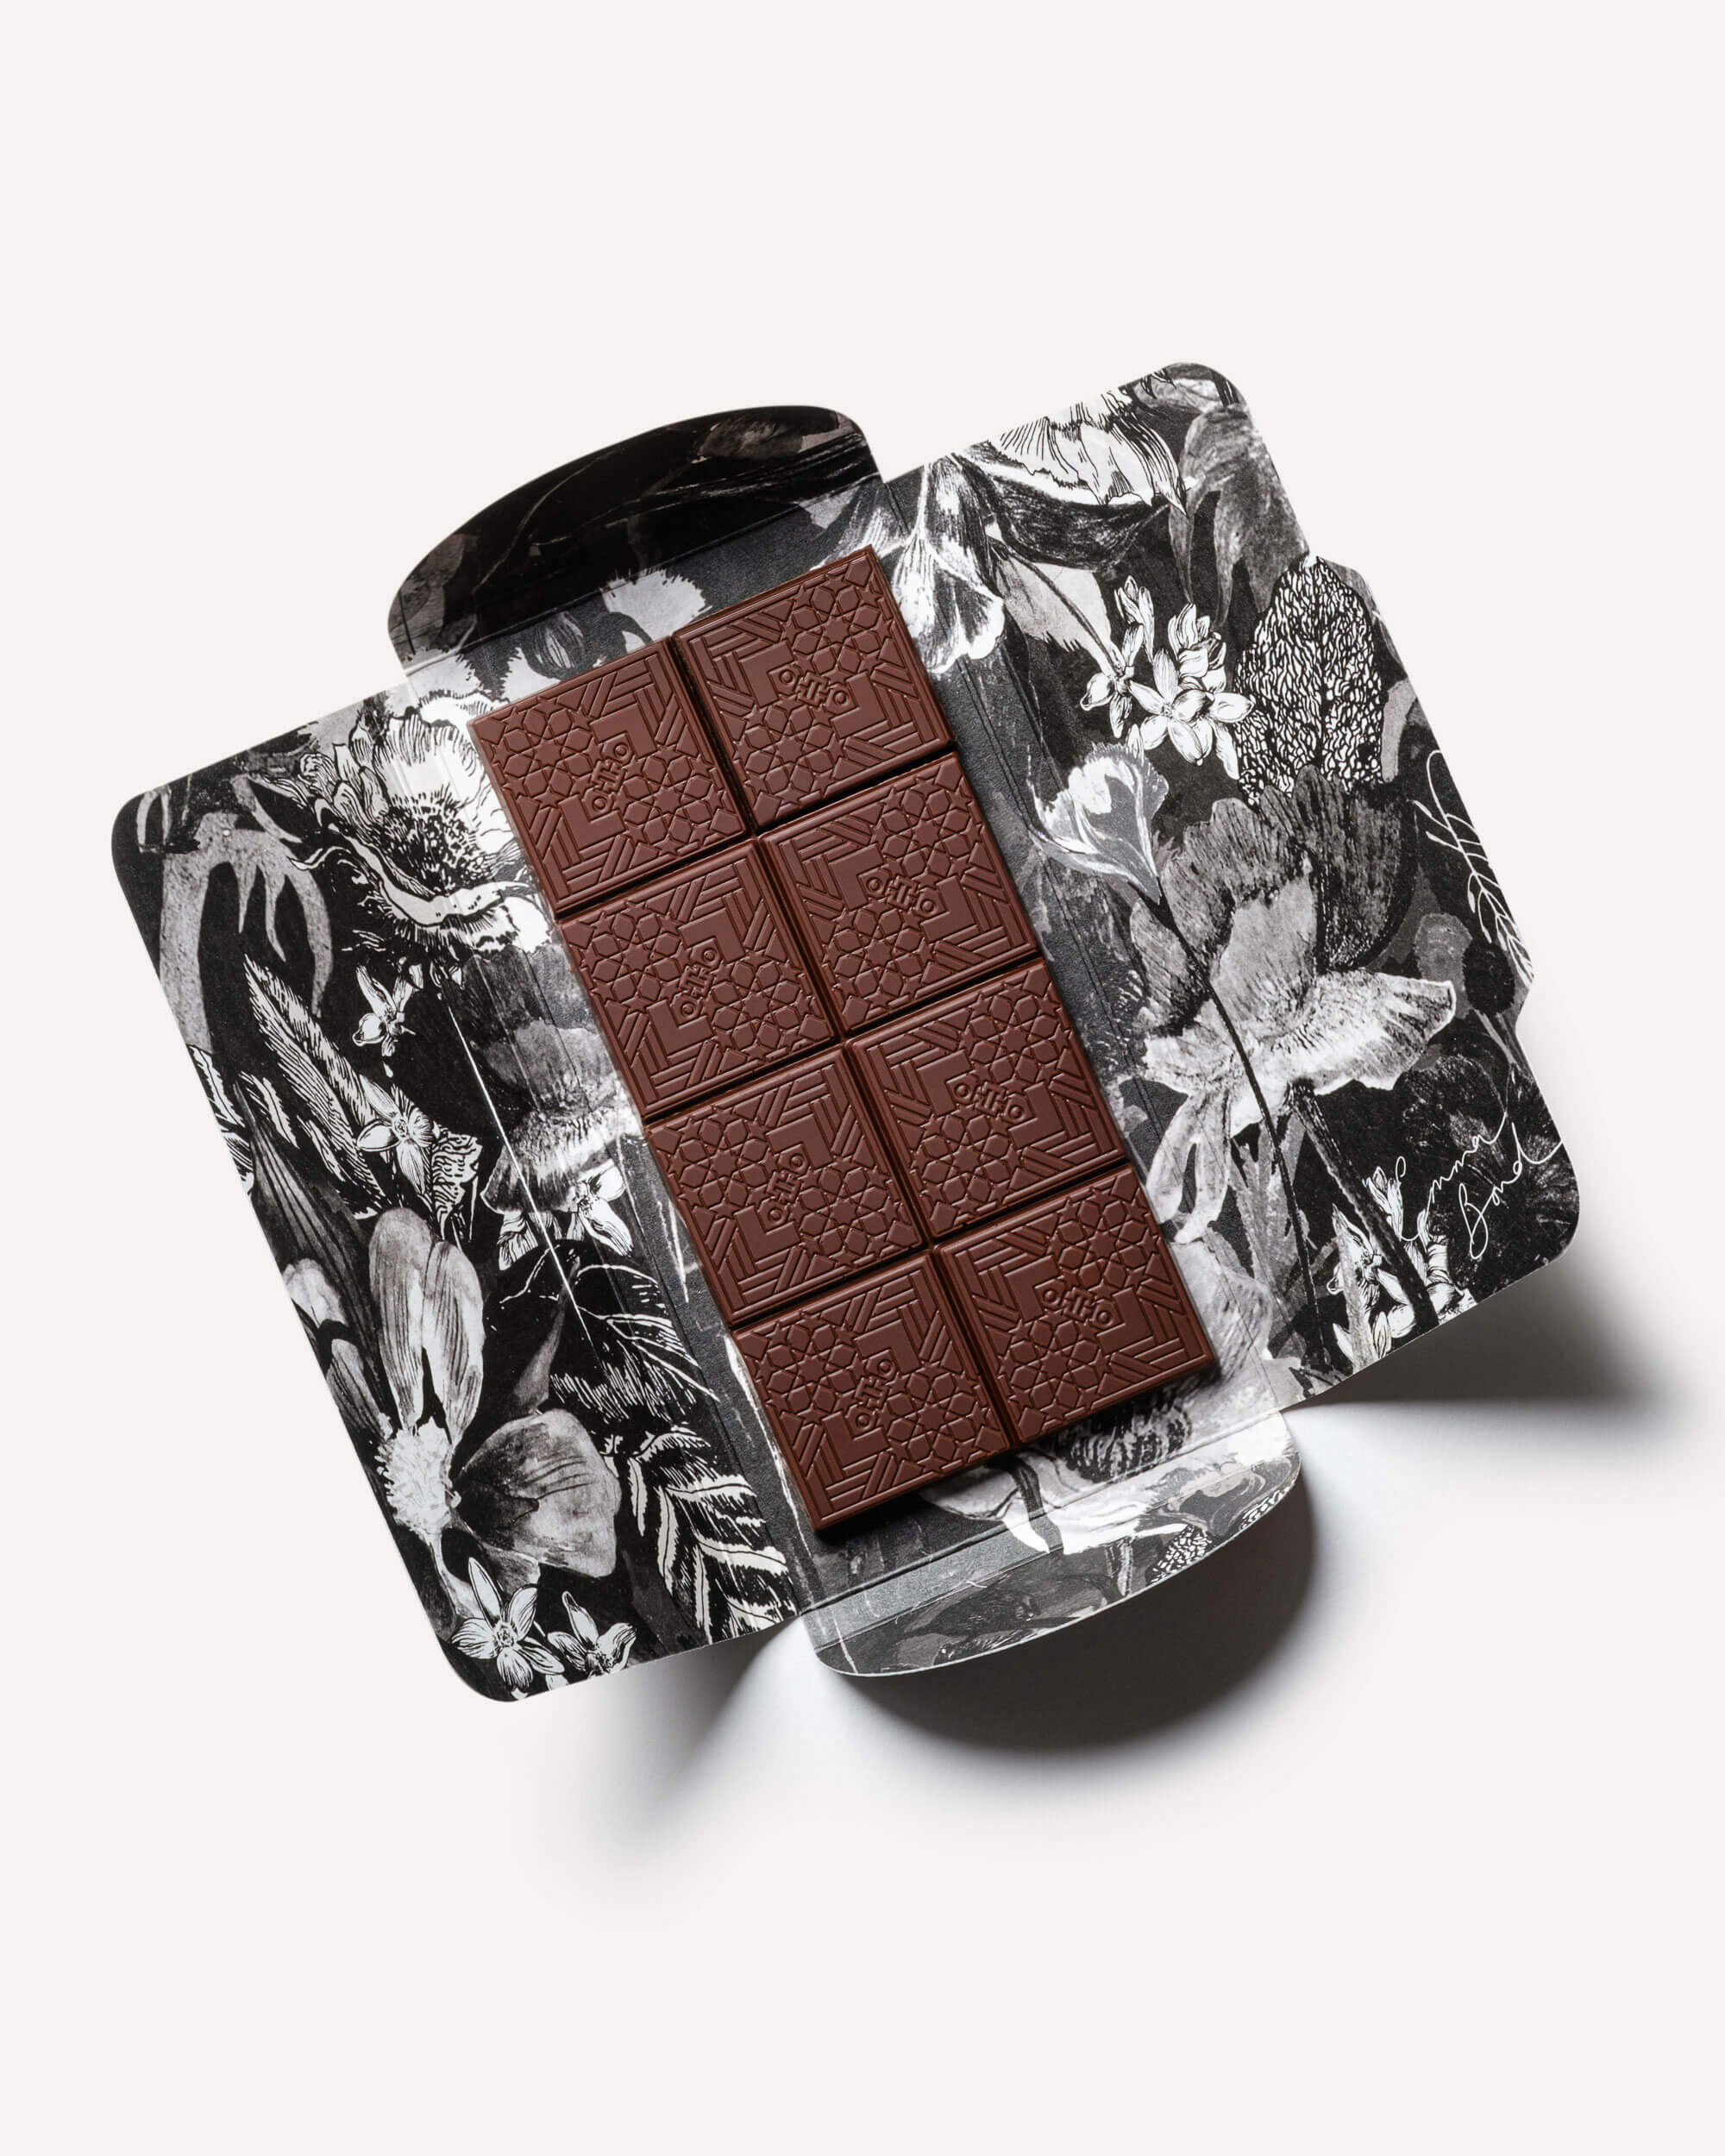 Daytime dark chocolate